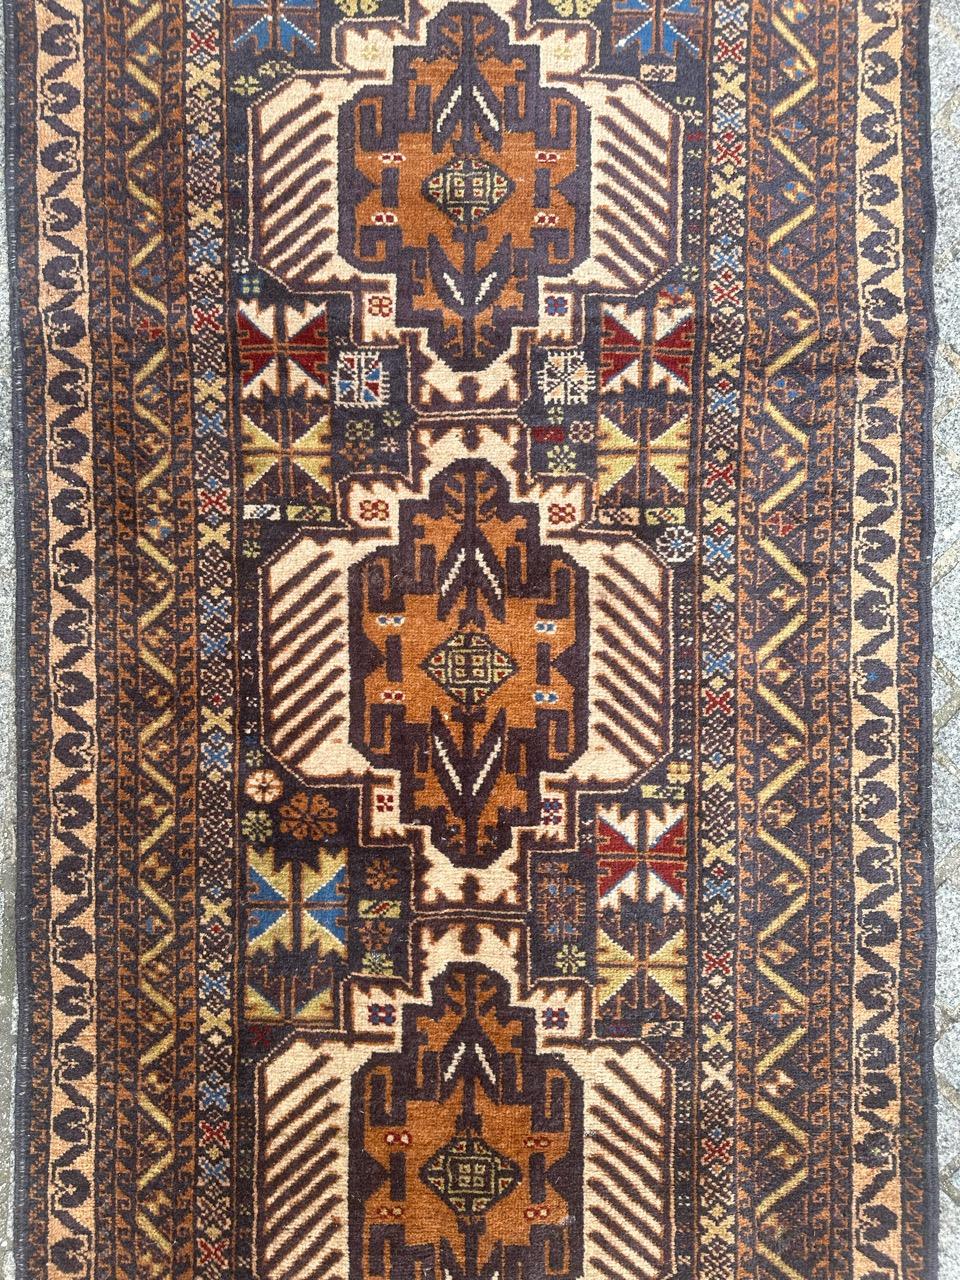 Joli tapis turkmène baloutche afghan du milieu du siècle avec de beaux motifs tribaux et de belles couleurs avec du bleu, de l'orange, du vert et du rouge, entièrement noué à la main avec de la laine sur une base de laine. 

✨✨✨
